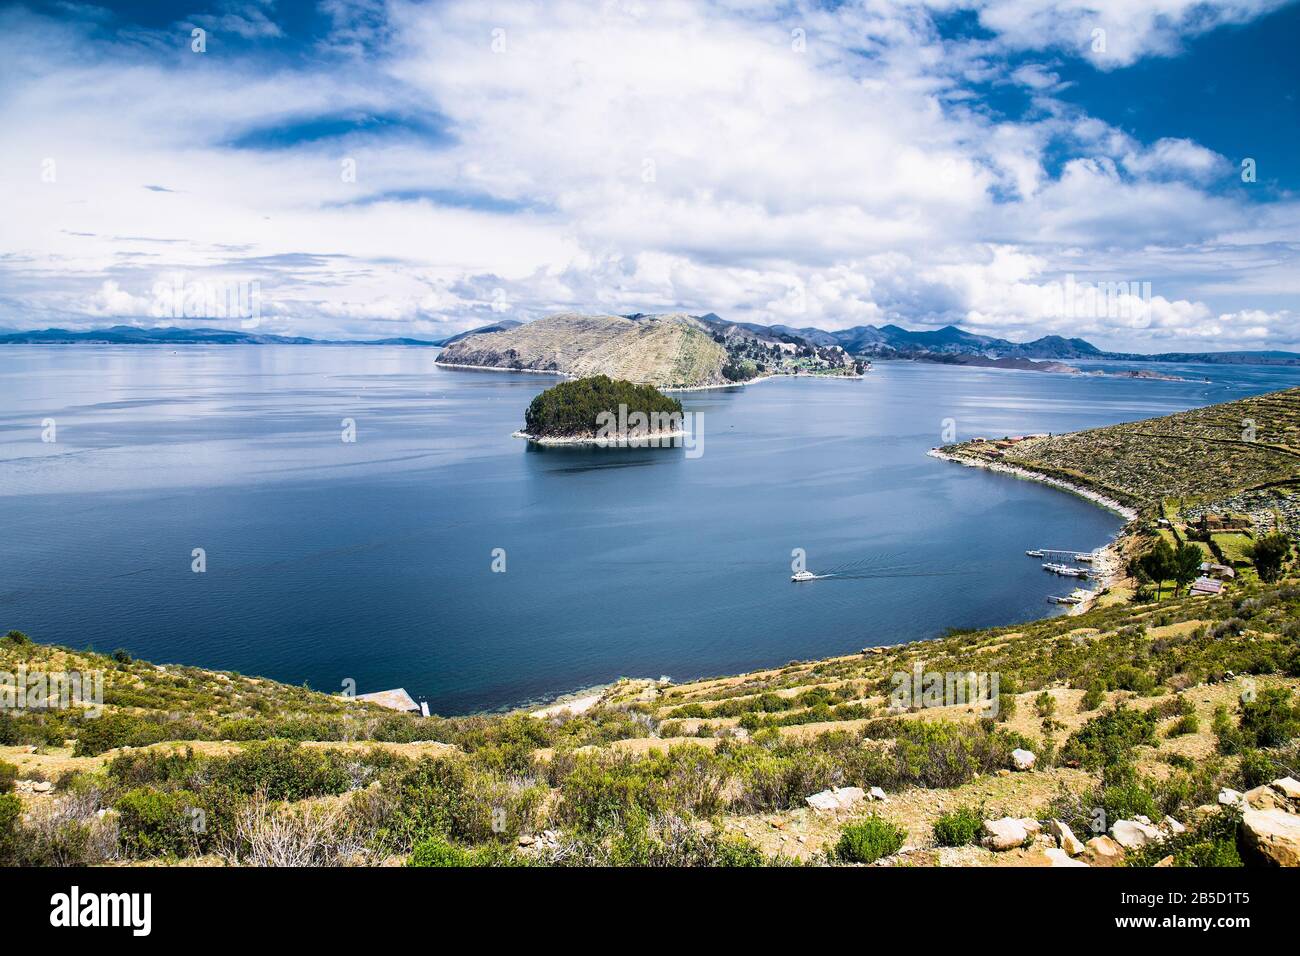 Vue panoramique depuis le village de l'île Isla del sol, dans le lac Titicaca, en Bolivie. Amérique Du Sud. Banque D'Images